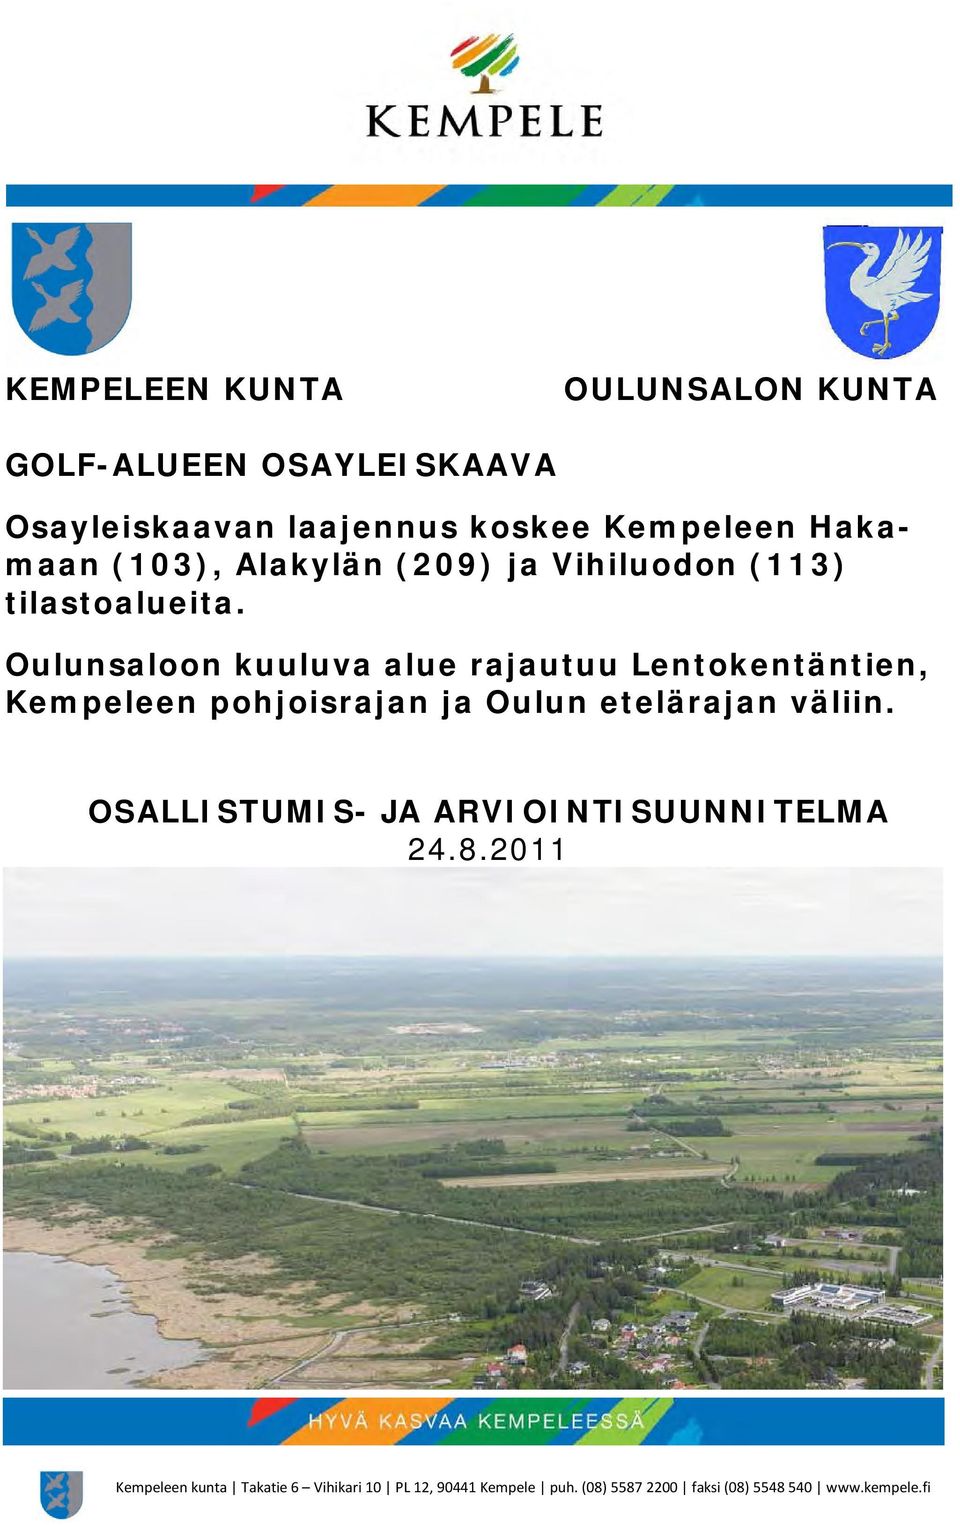 Oulunsaloon kuuluva alue rajautuu Lentokentäntien, Kempeleen pohjoisrajan ja Oulun etelärajan väliin.